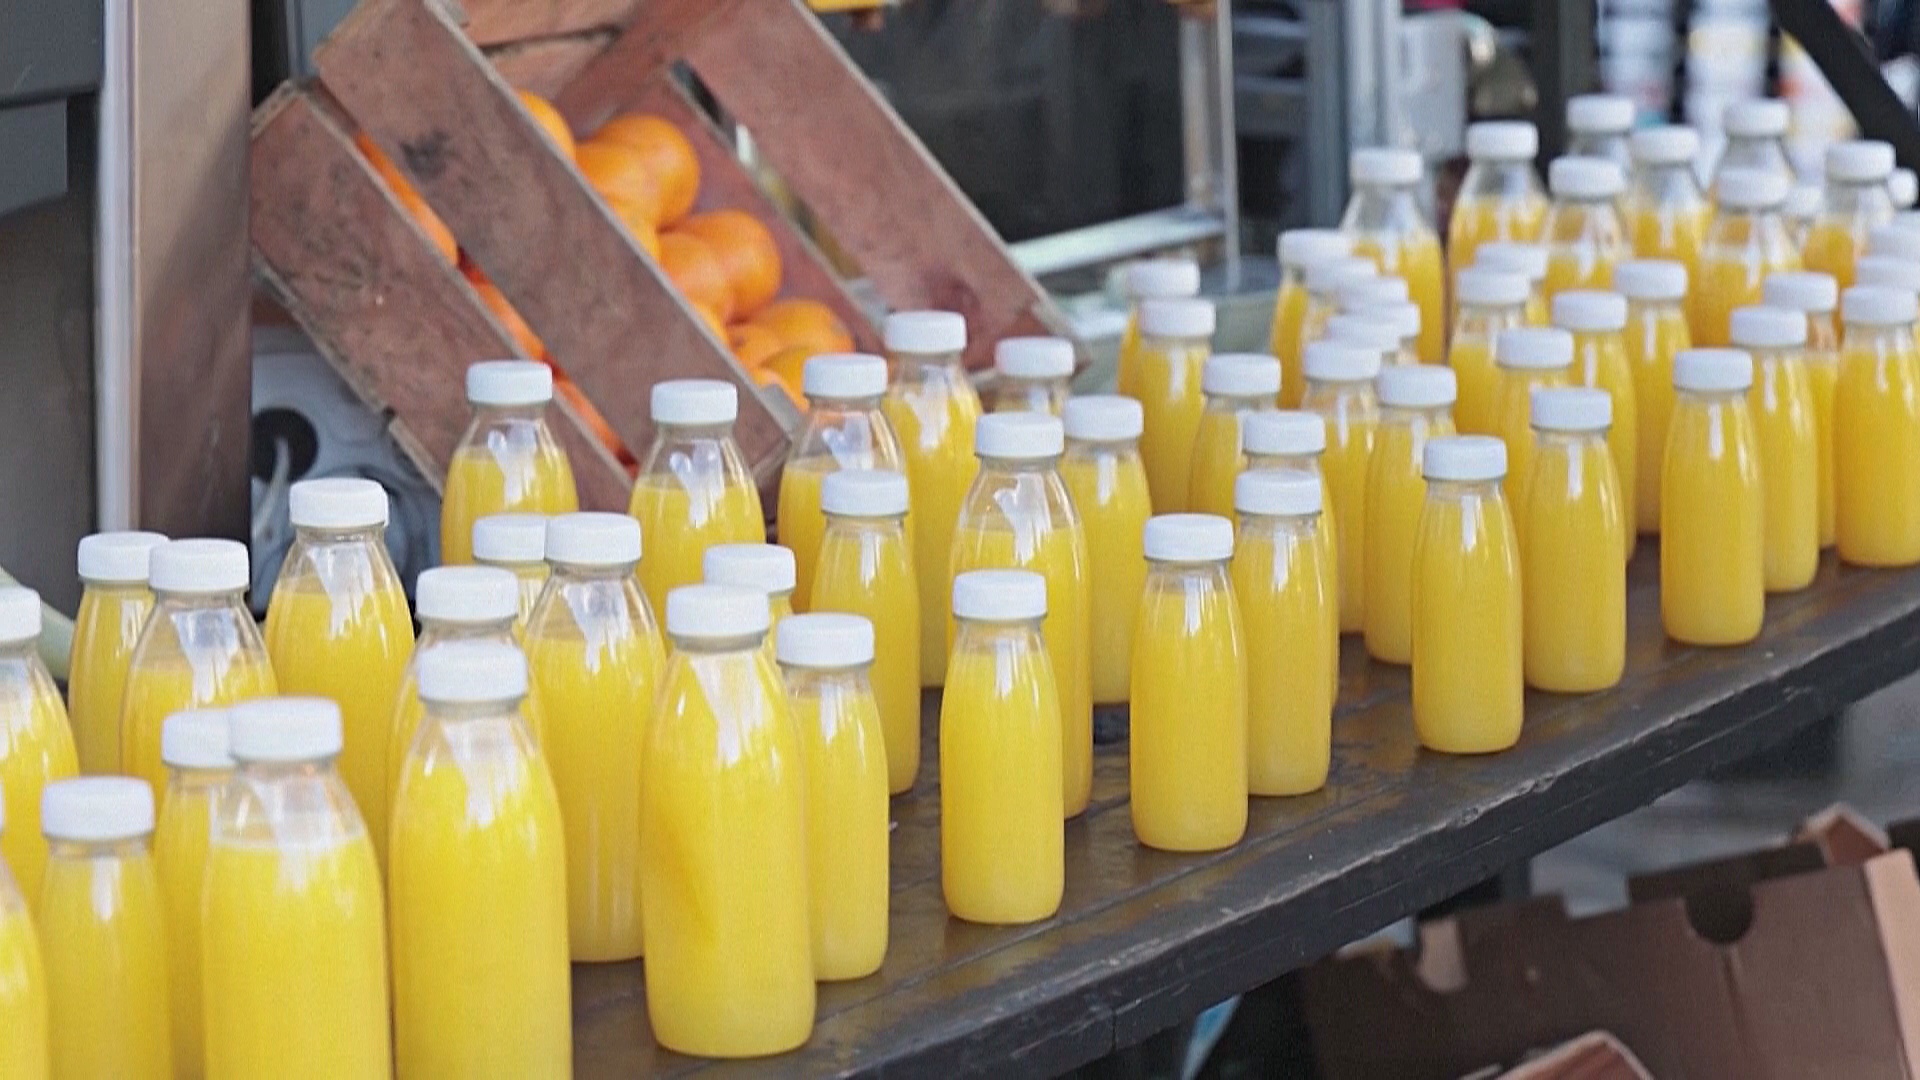 Цены на апельсиновый сок выросли до рекордных значений